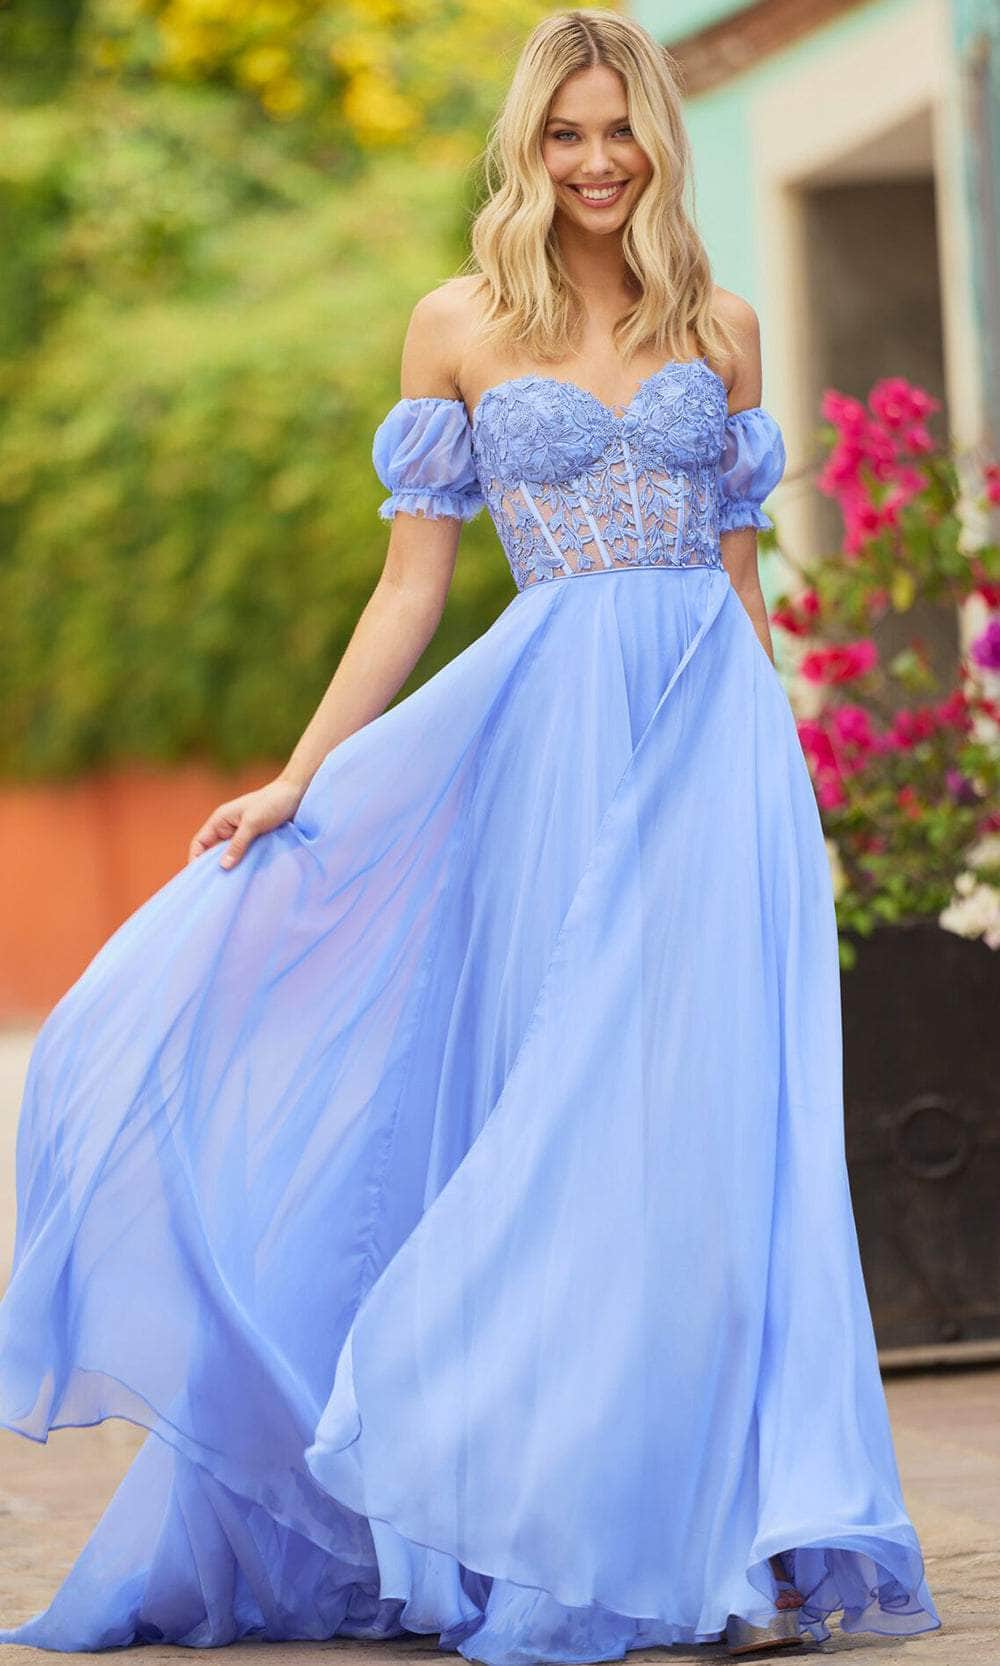 Iris Corset Lace Gown - Royal Blue